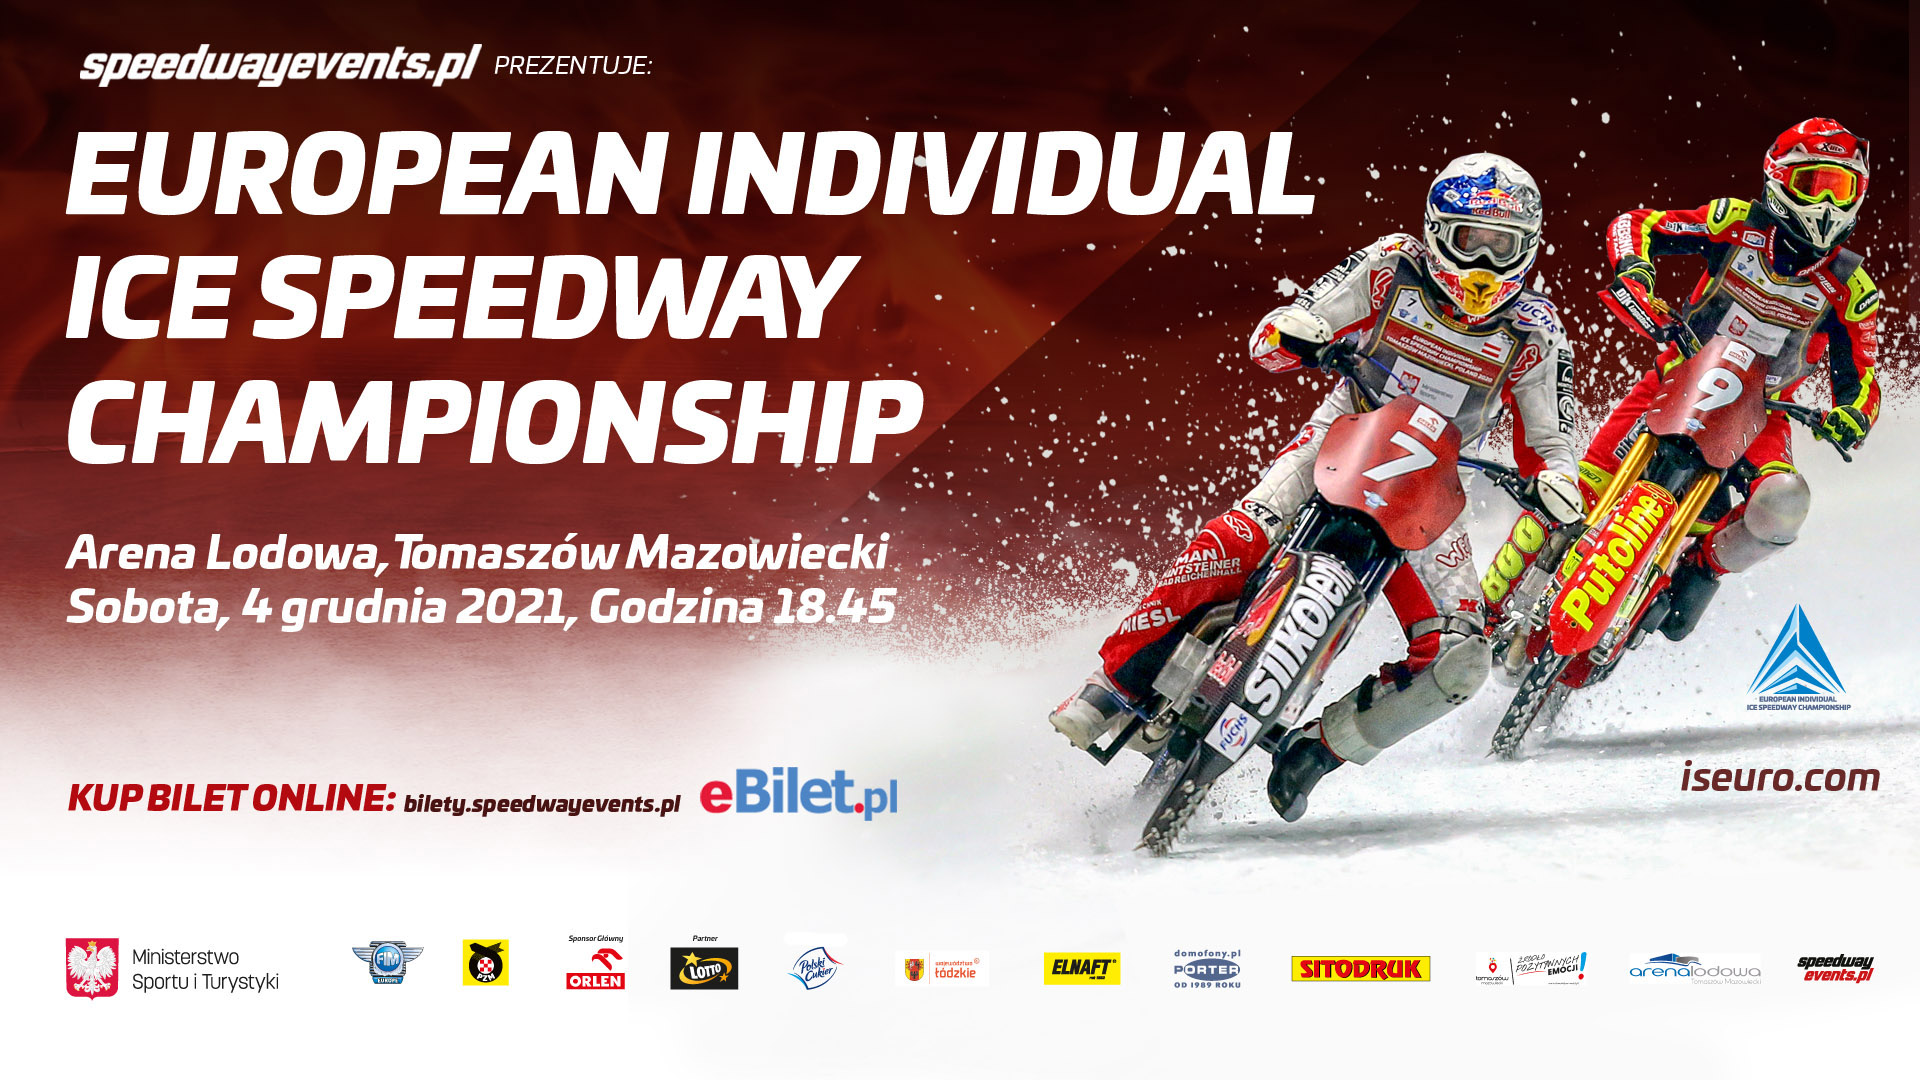 Poznaliśmy nazwiska uczestników European Individual Ice Speedway Championship